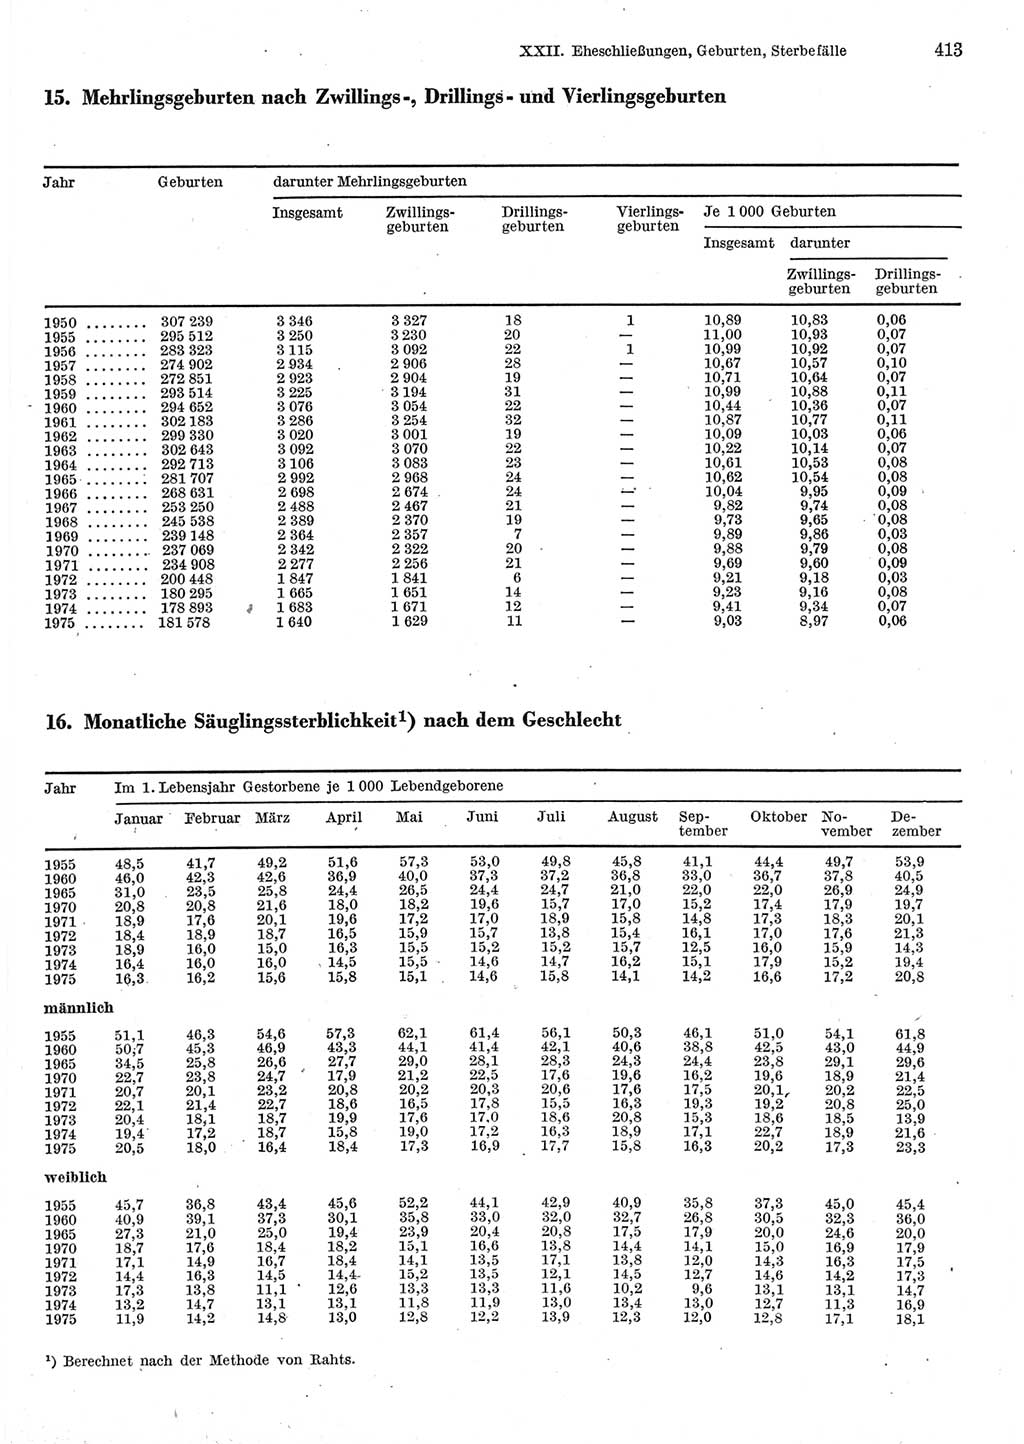 Statistisches Jahrbuch der Deutschen Demokratischen Republik (DDR) 1977, Seite 413 (Stat. Jb. DDR 1977, S. 413)